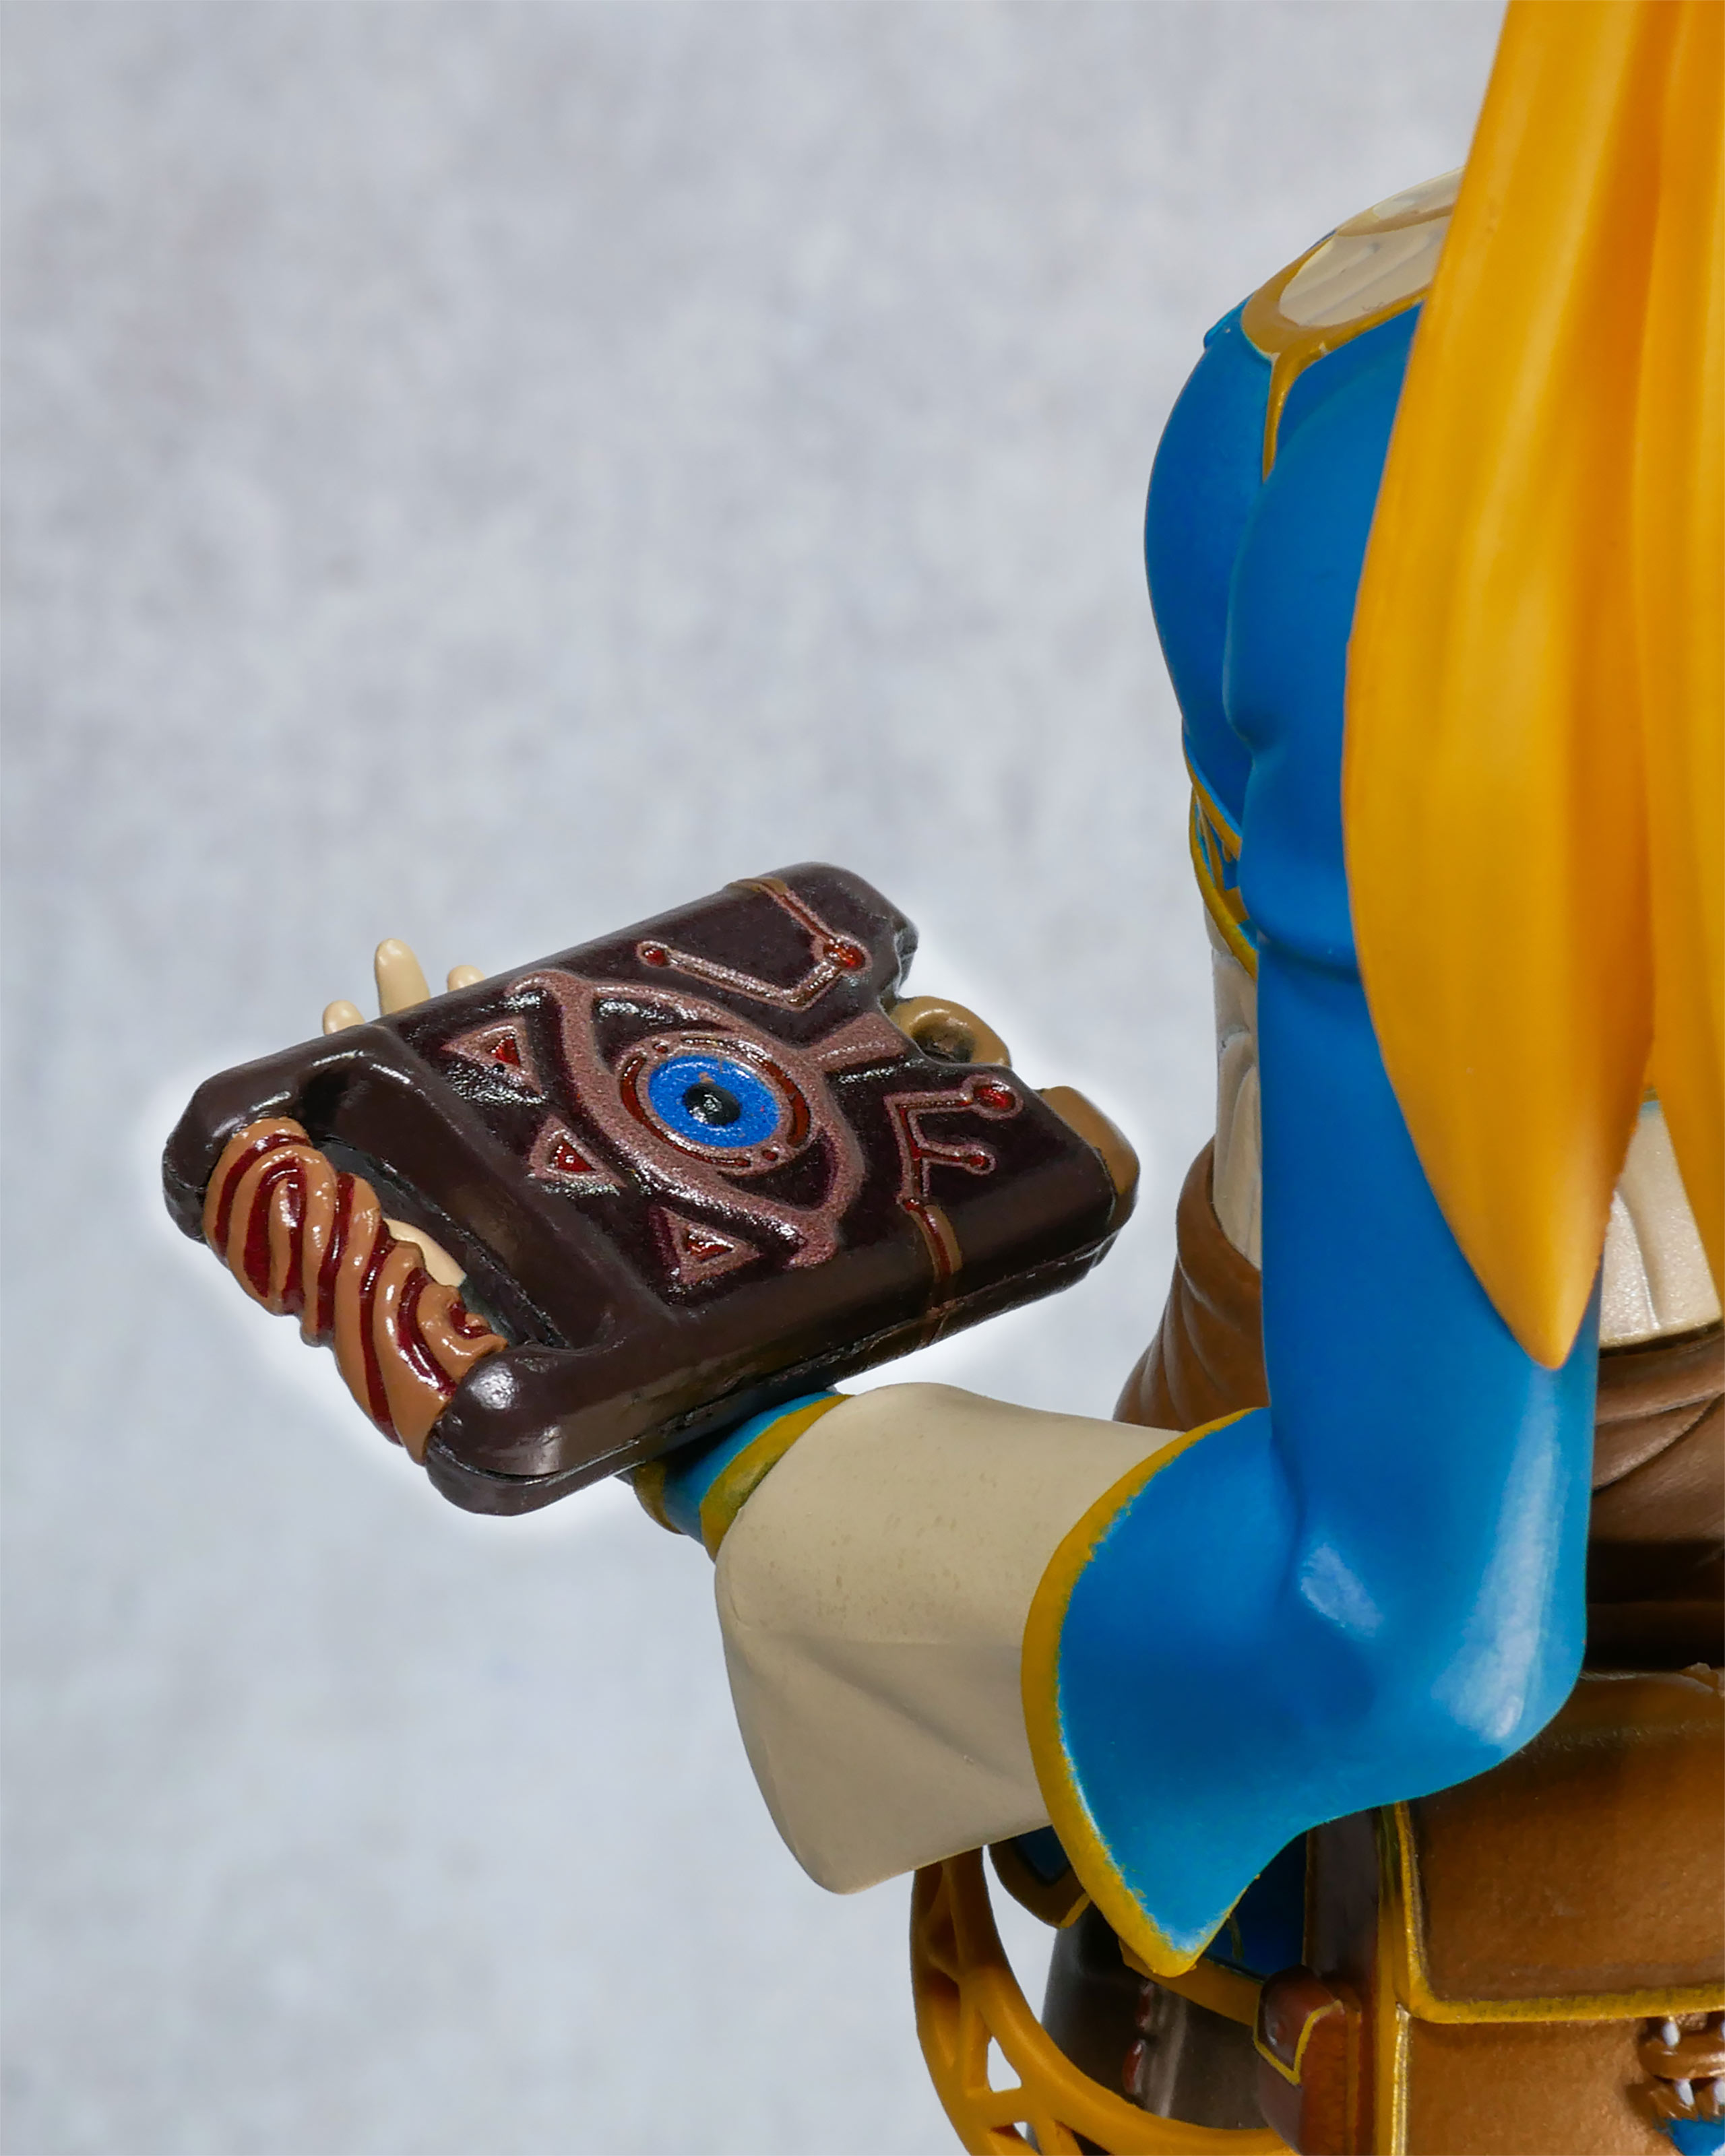 The Legend of Zelda - Breath of the Wild Standbeeld met Diorama